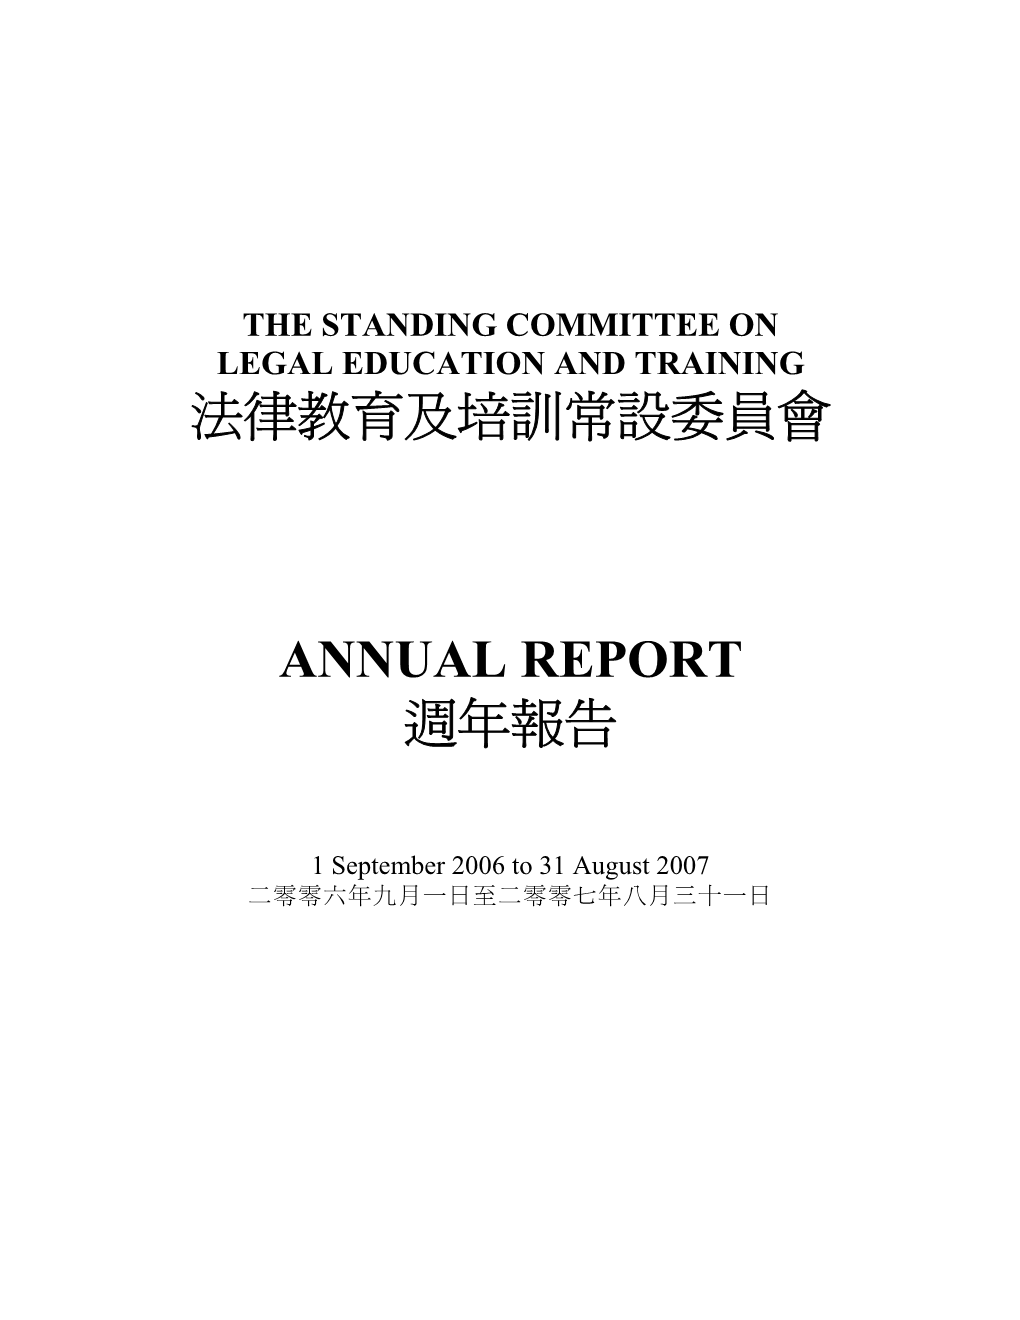 法律教育及培訓常設委員會 Annual Report 週年報告